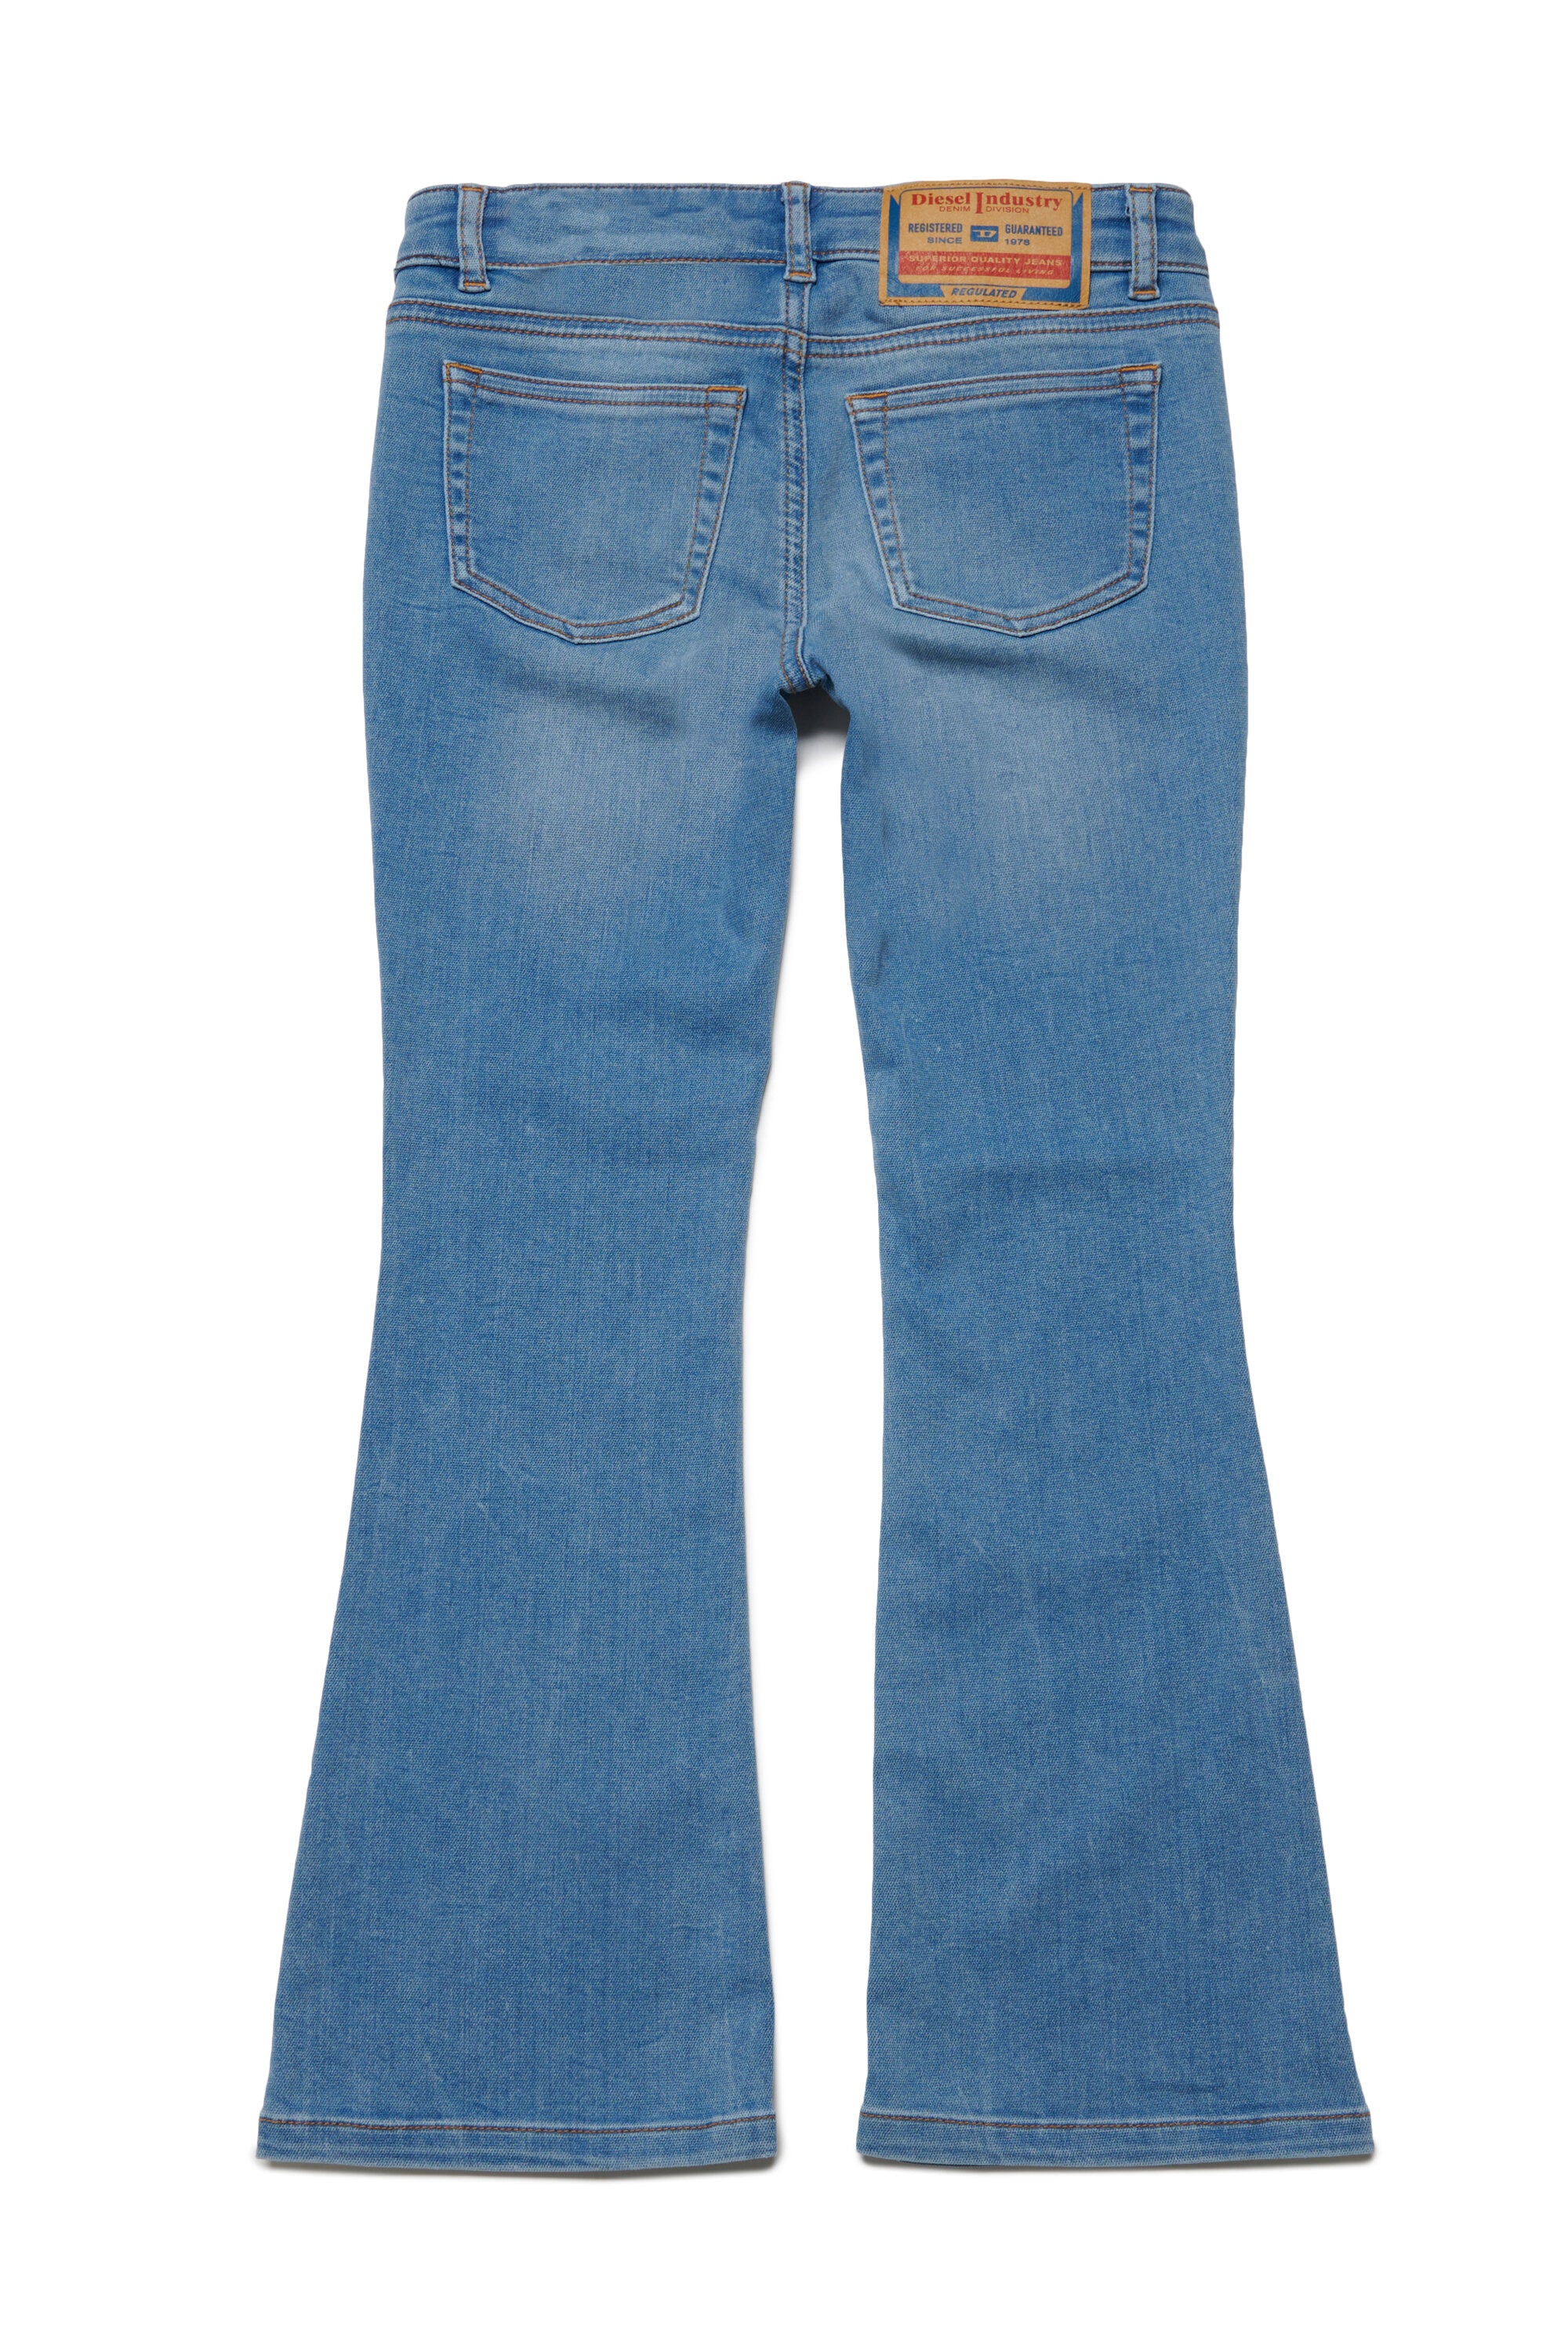 JoggJeans® bootcut en tonos claros - 1969 D-Ebbey